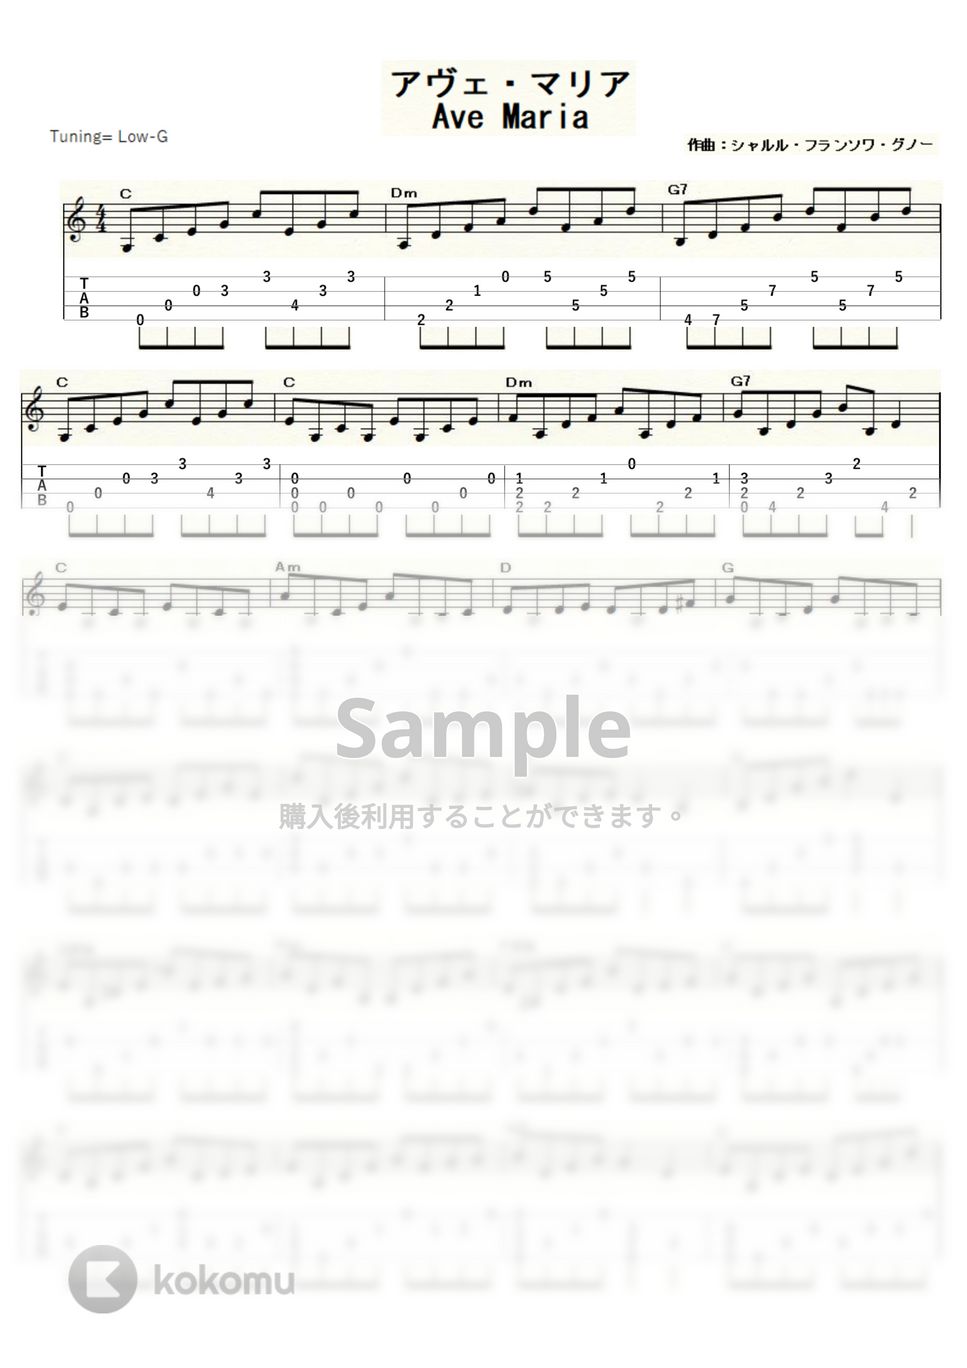 グノー - グノーのアヴェ・マリア (ｳｸﾚﾚｿﾛ / Low-G / 中級) by ukulelepapa